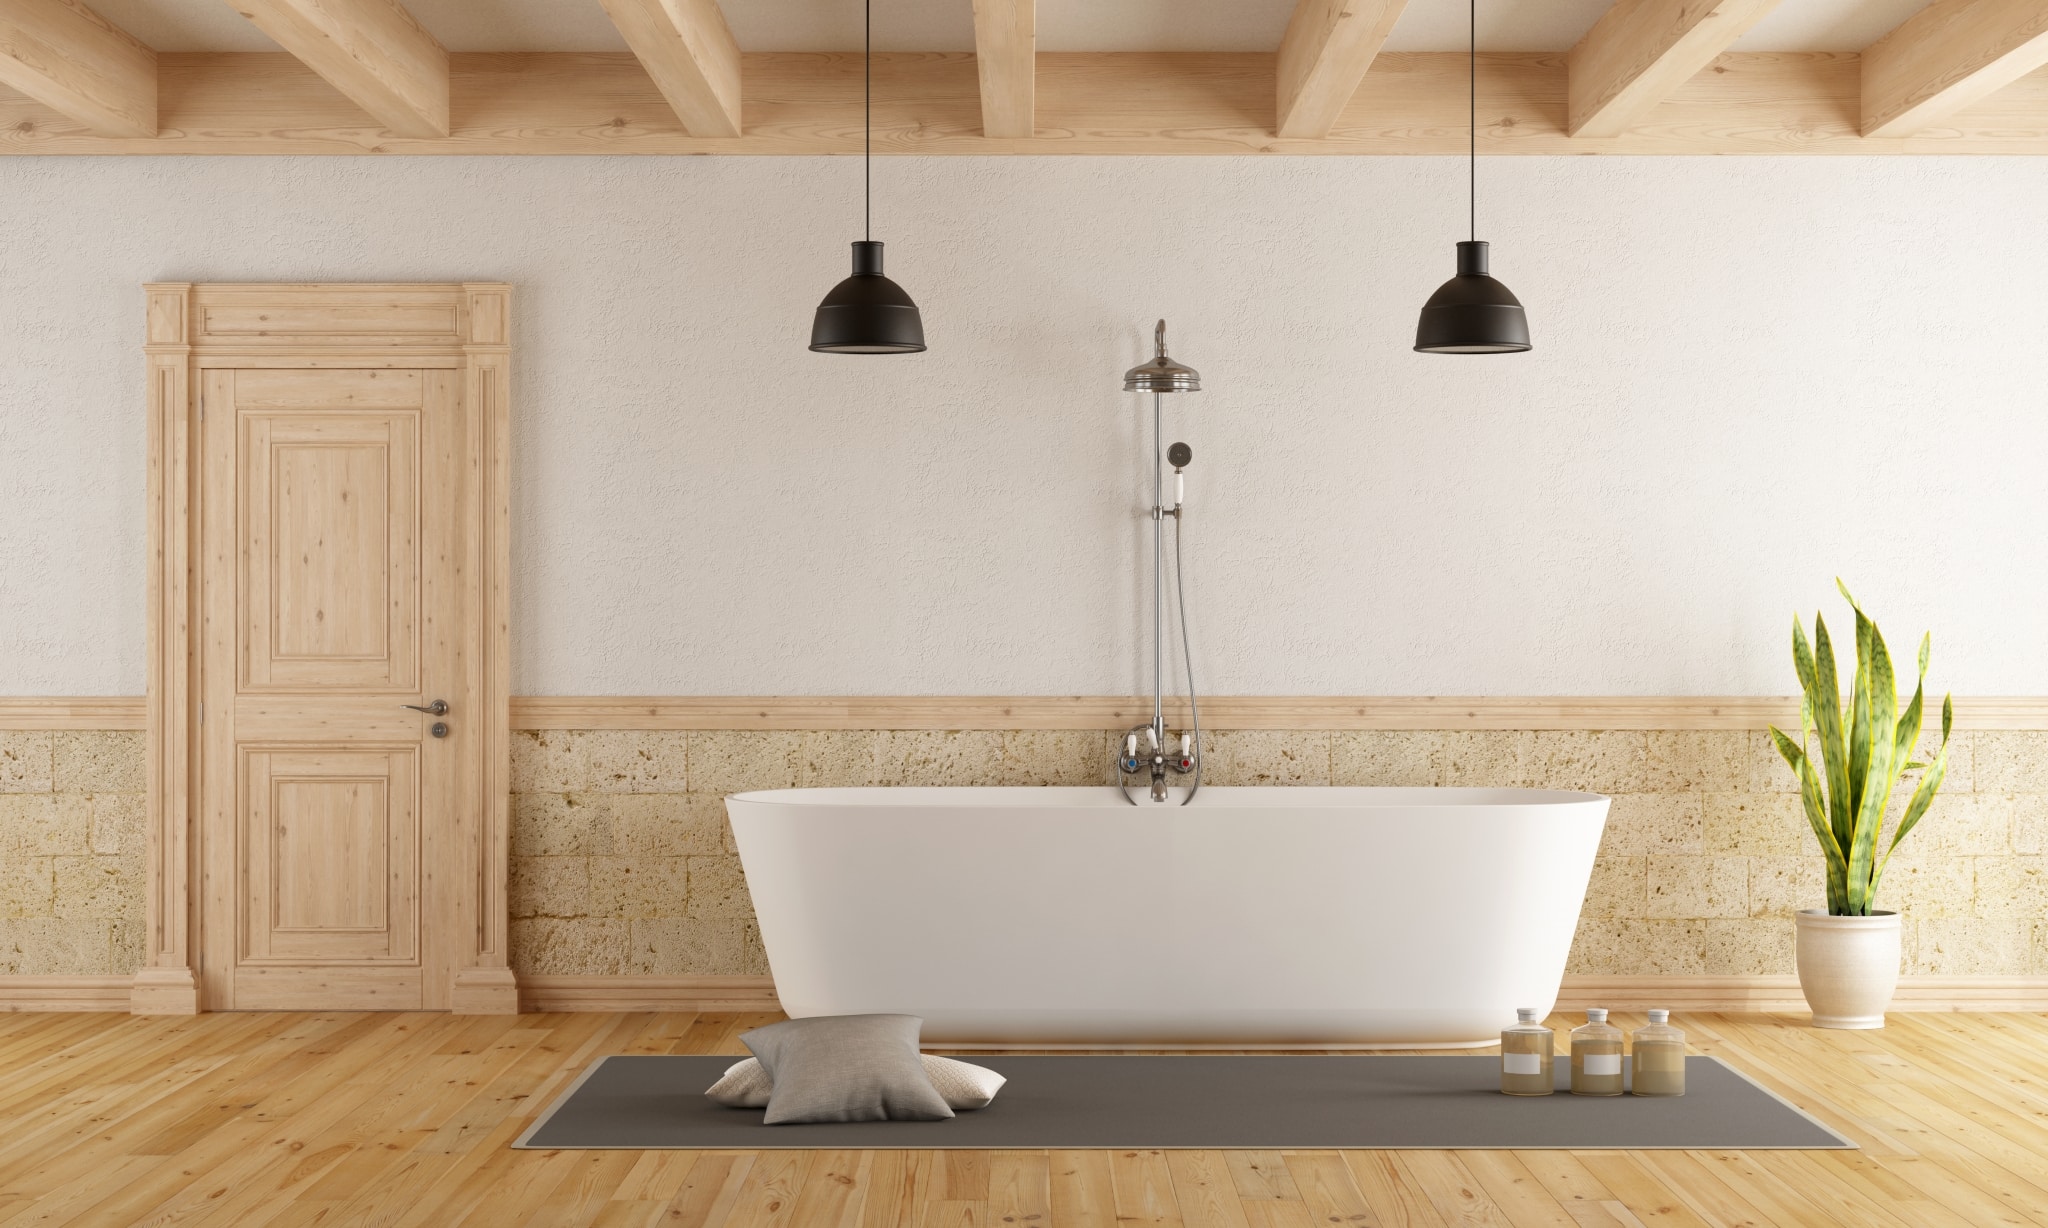 Modern Bathtub In A Rustic Room